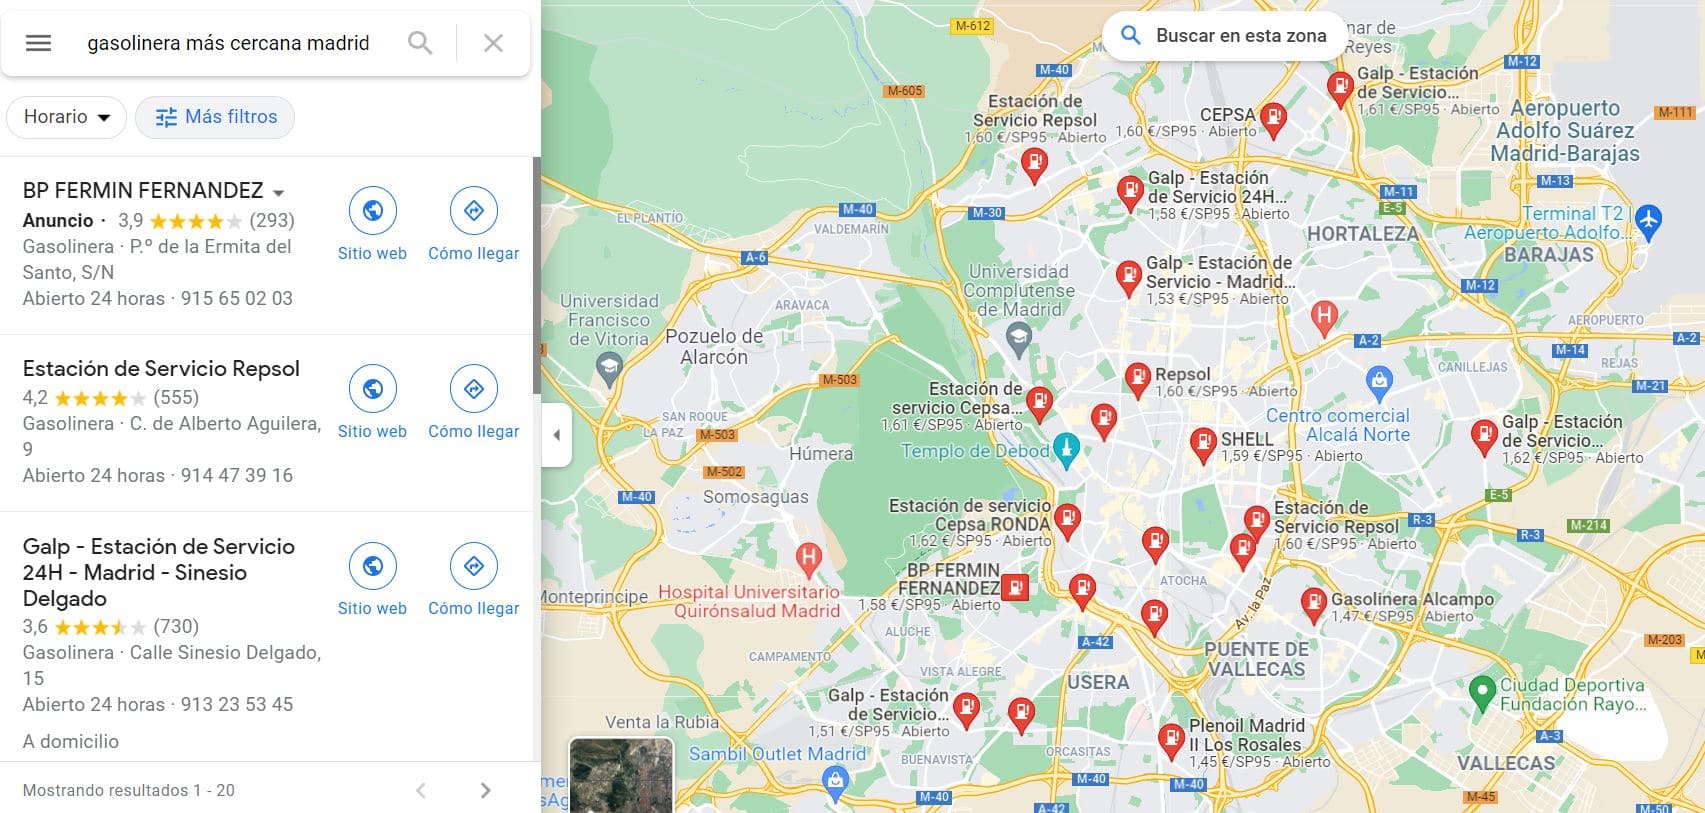 gasolinera más cercana en google maps